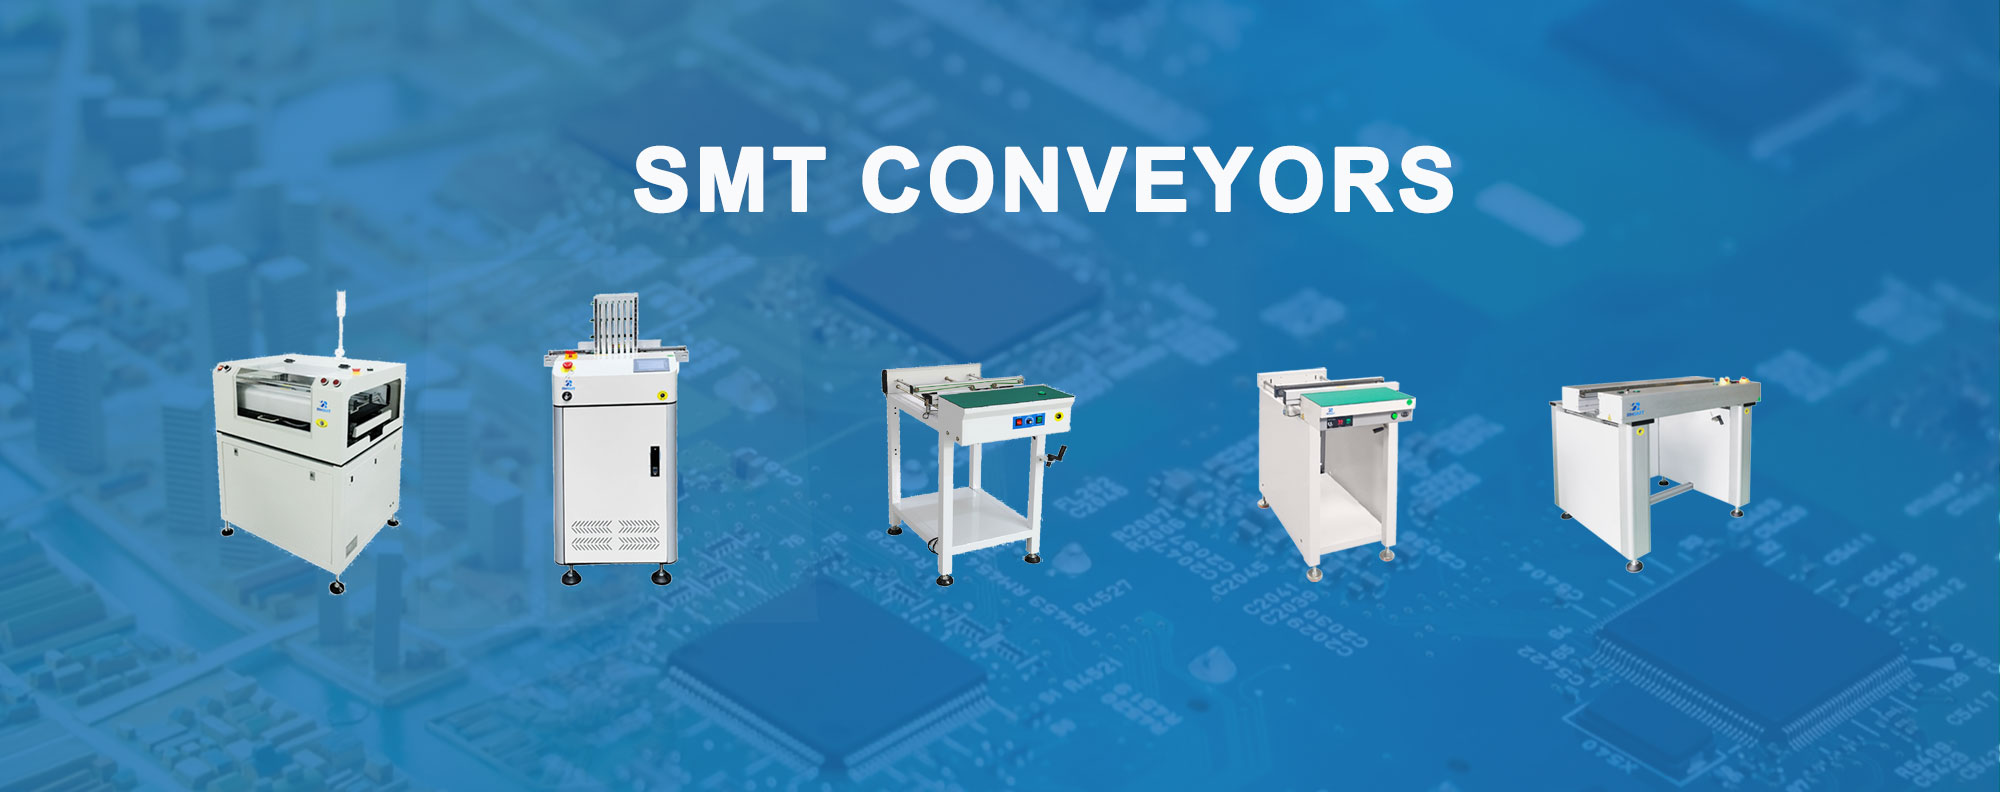 smt-conveyor18m9